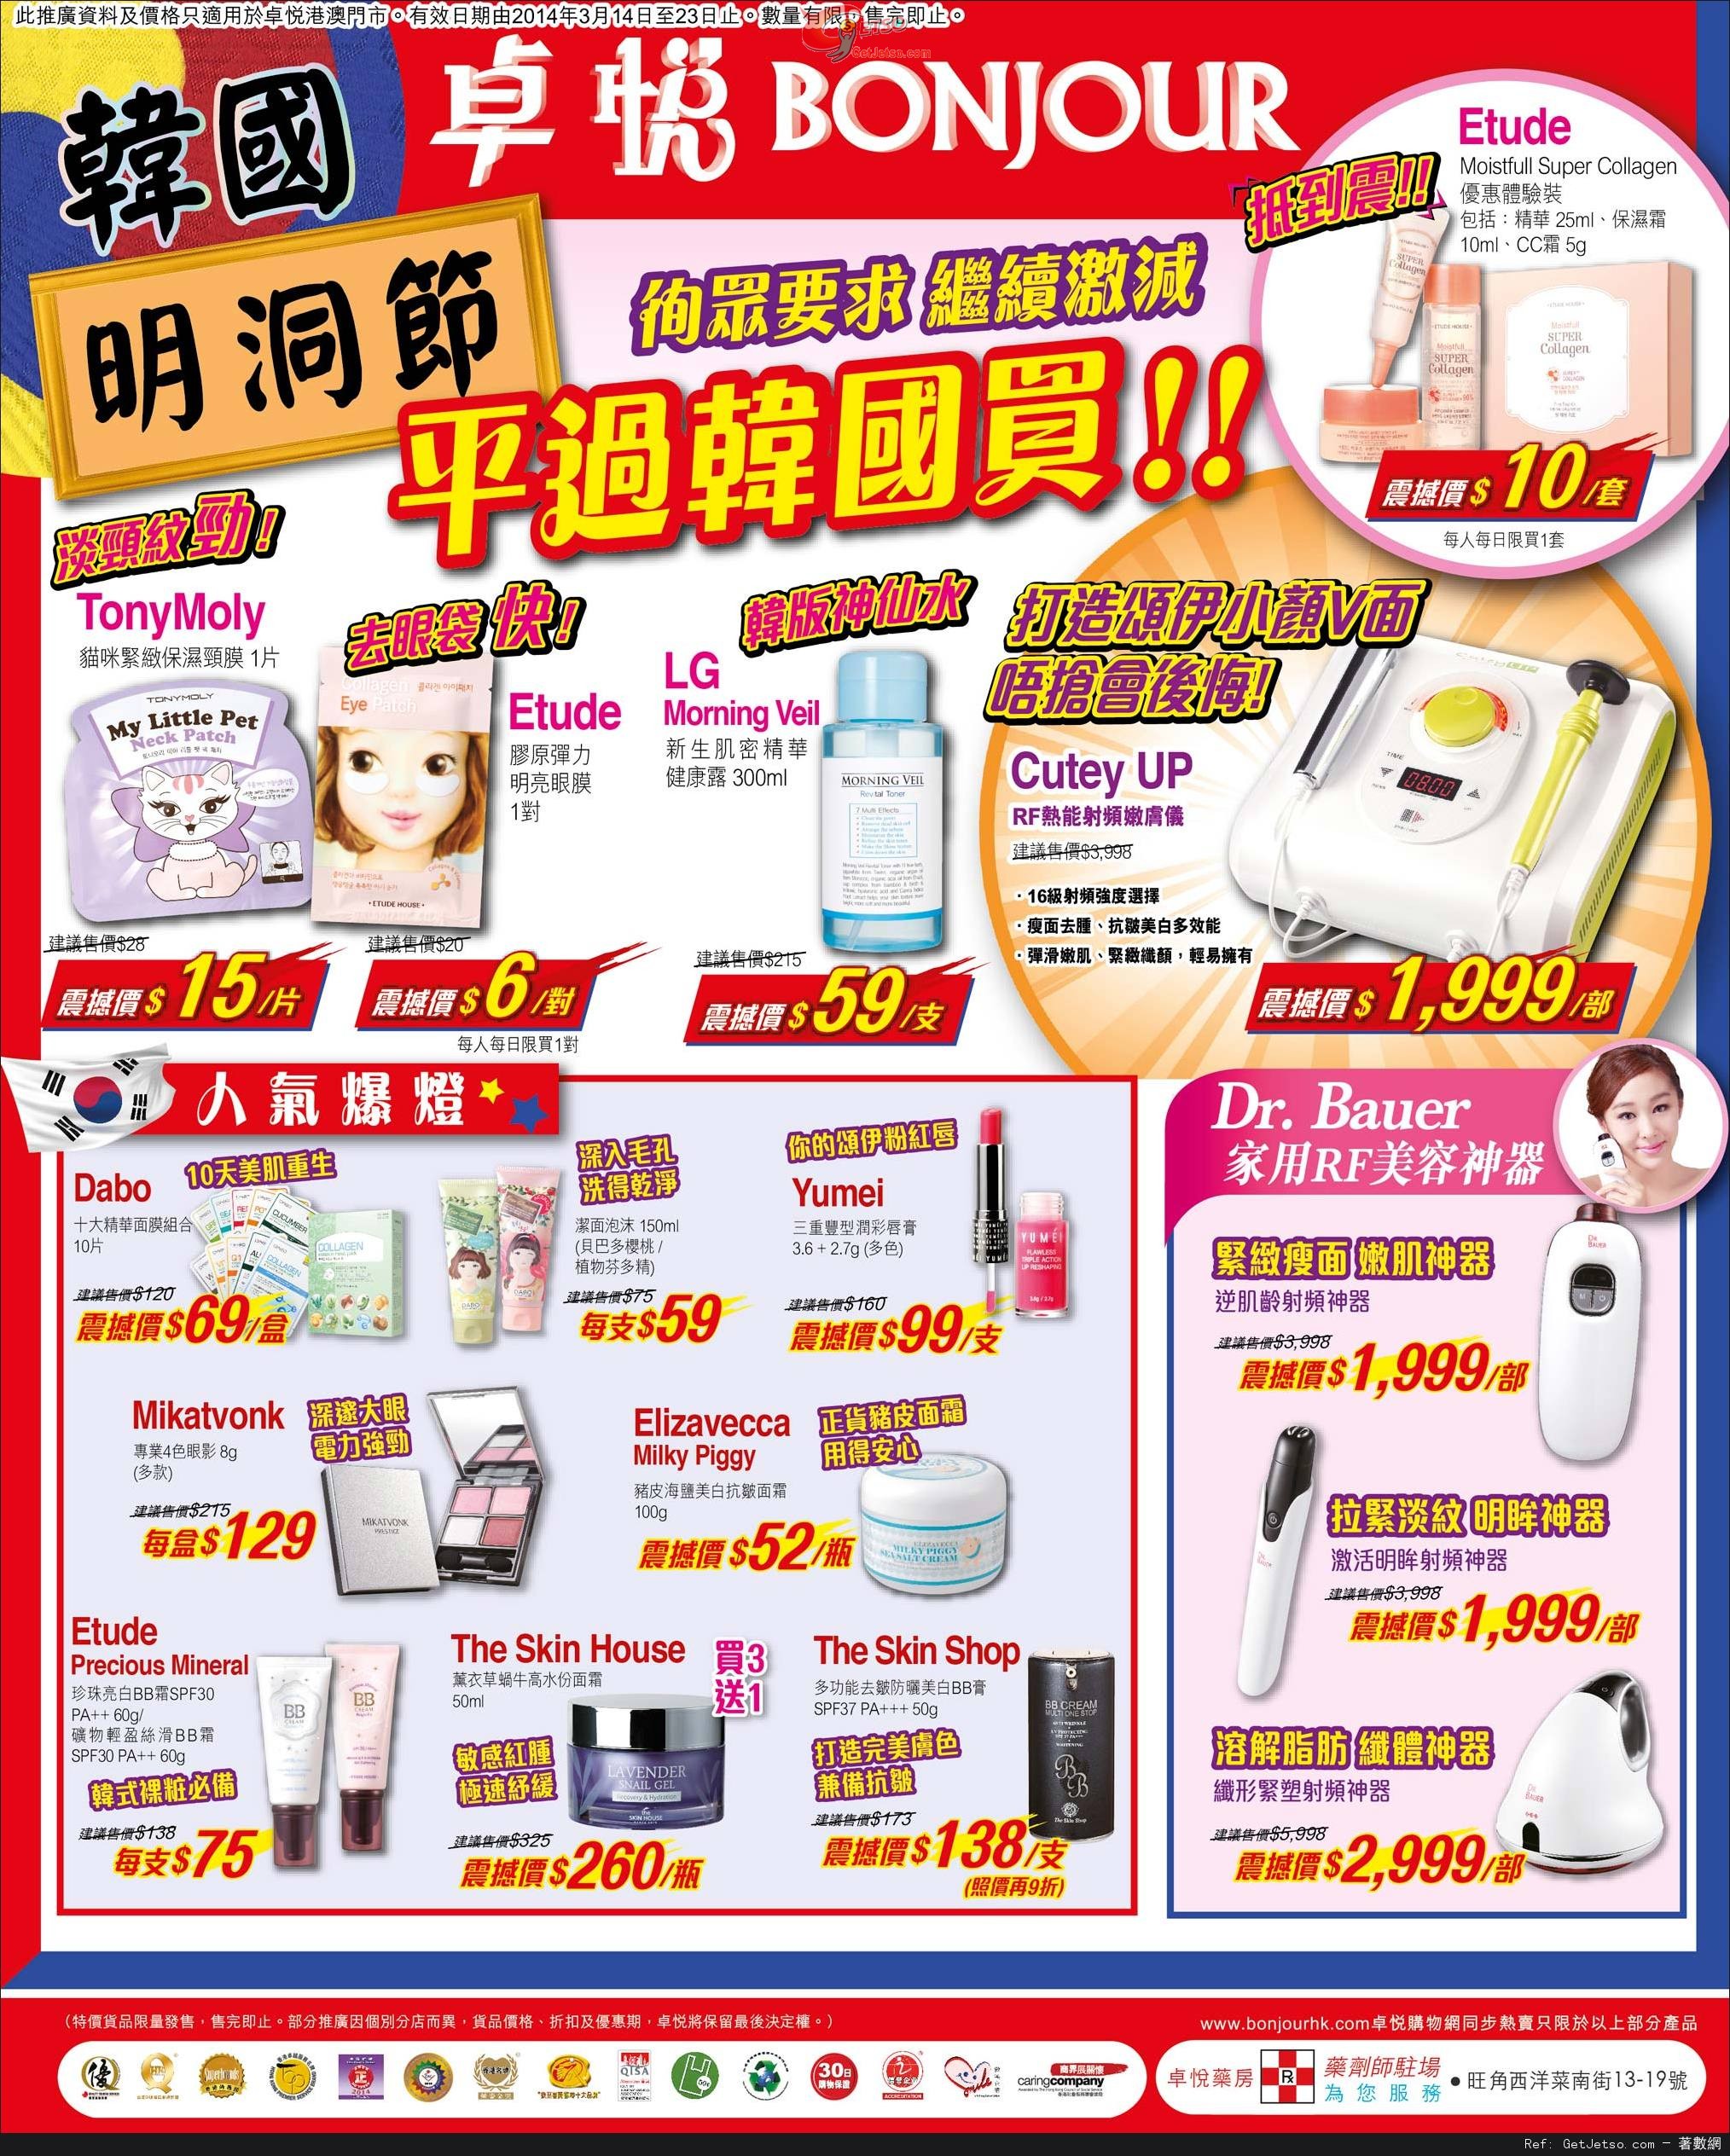 卓悅瘦面產品及韓國護膚品購買優惠(至14年3月20日)圖片2